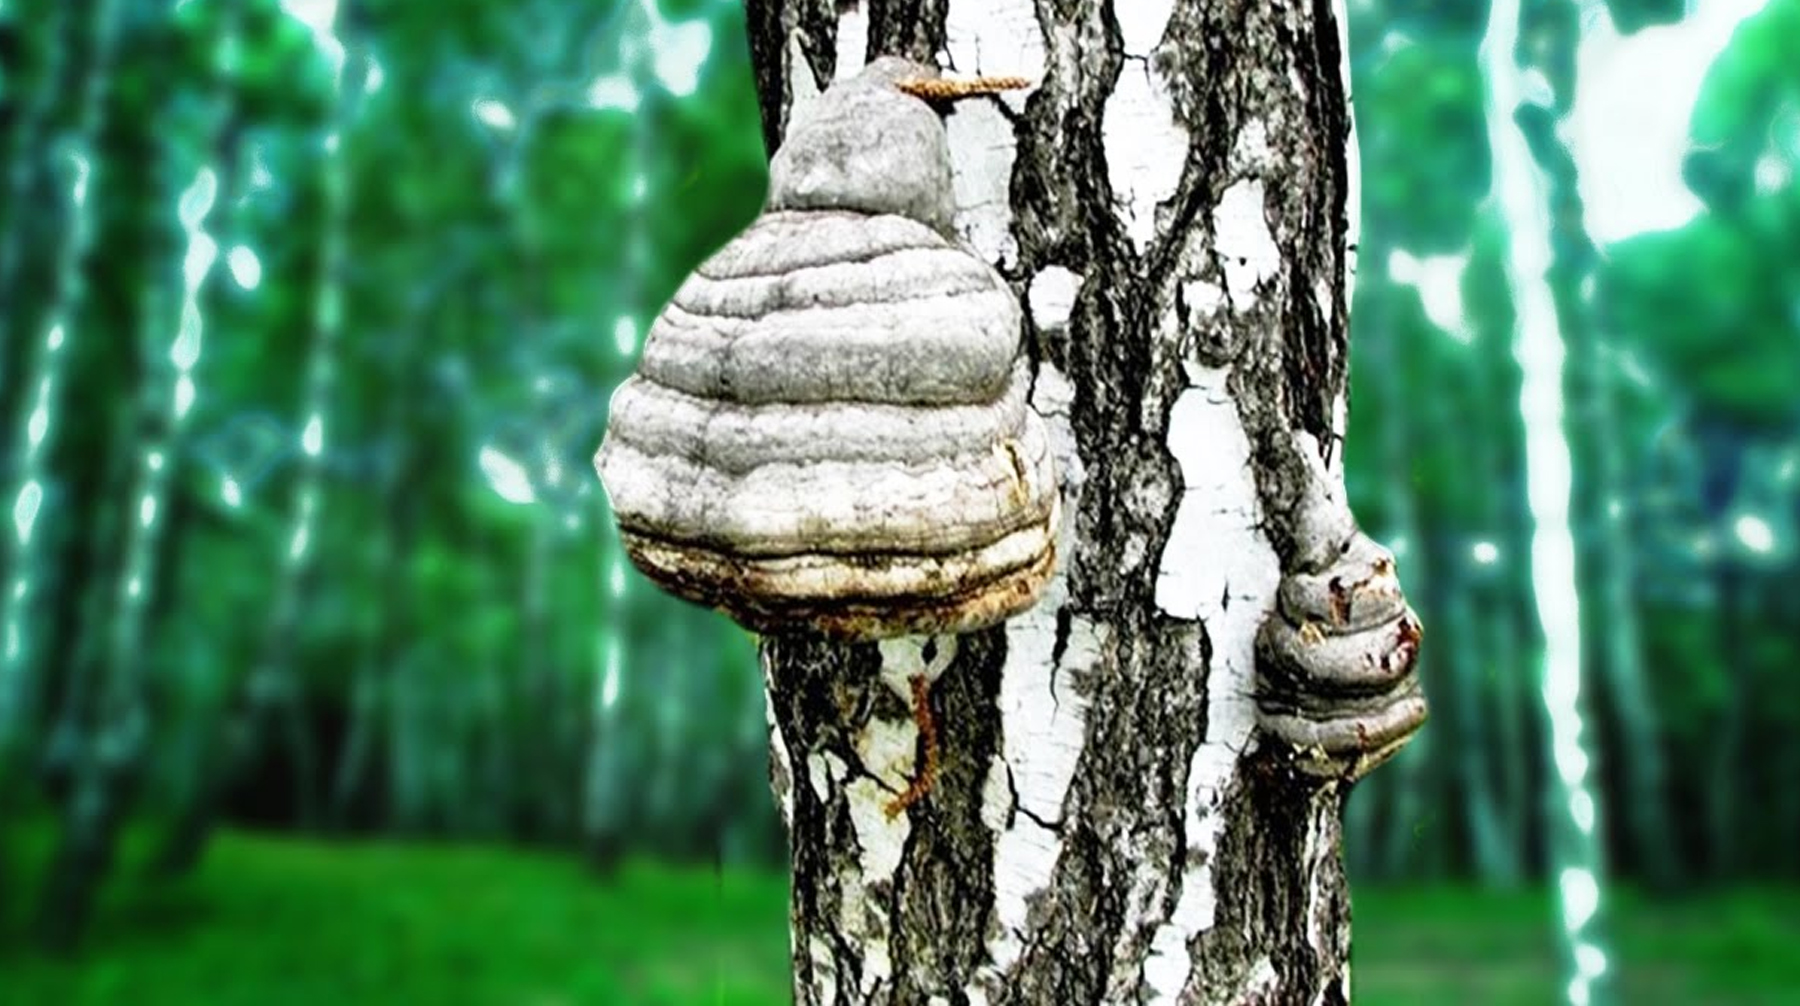 Издание «Наука из первых рук» вышло с публикацией о том, как лечиться от многих болезней древесным грибом undefined